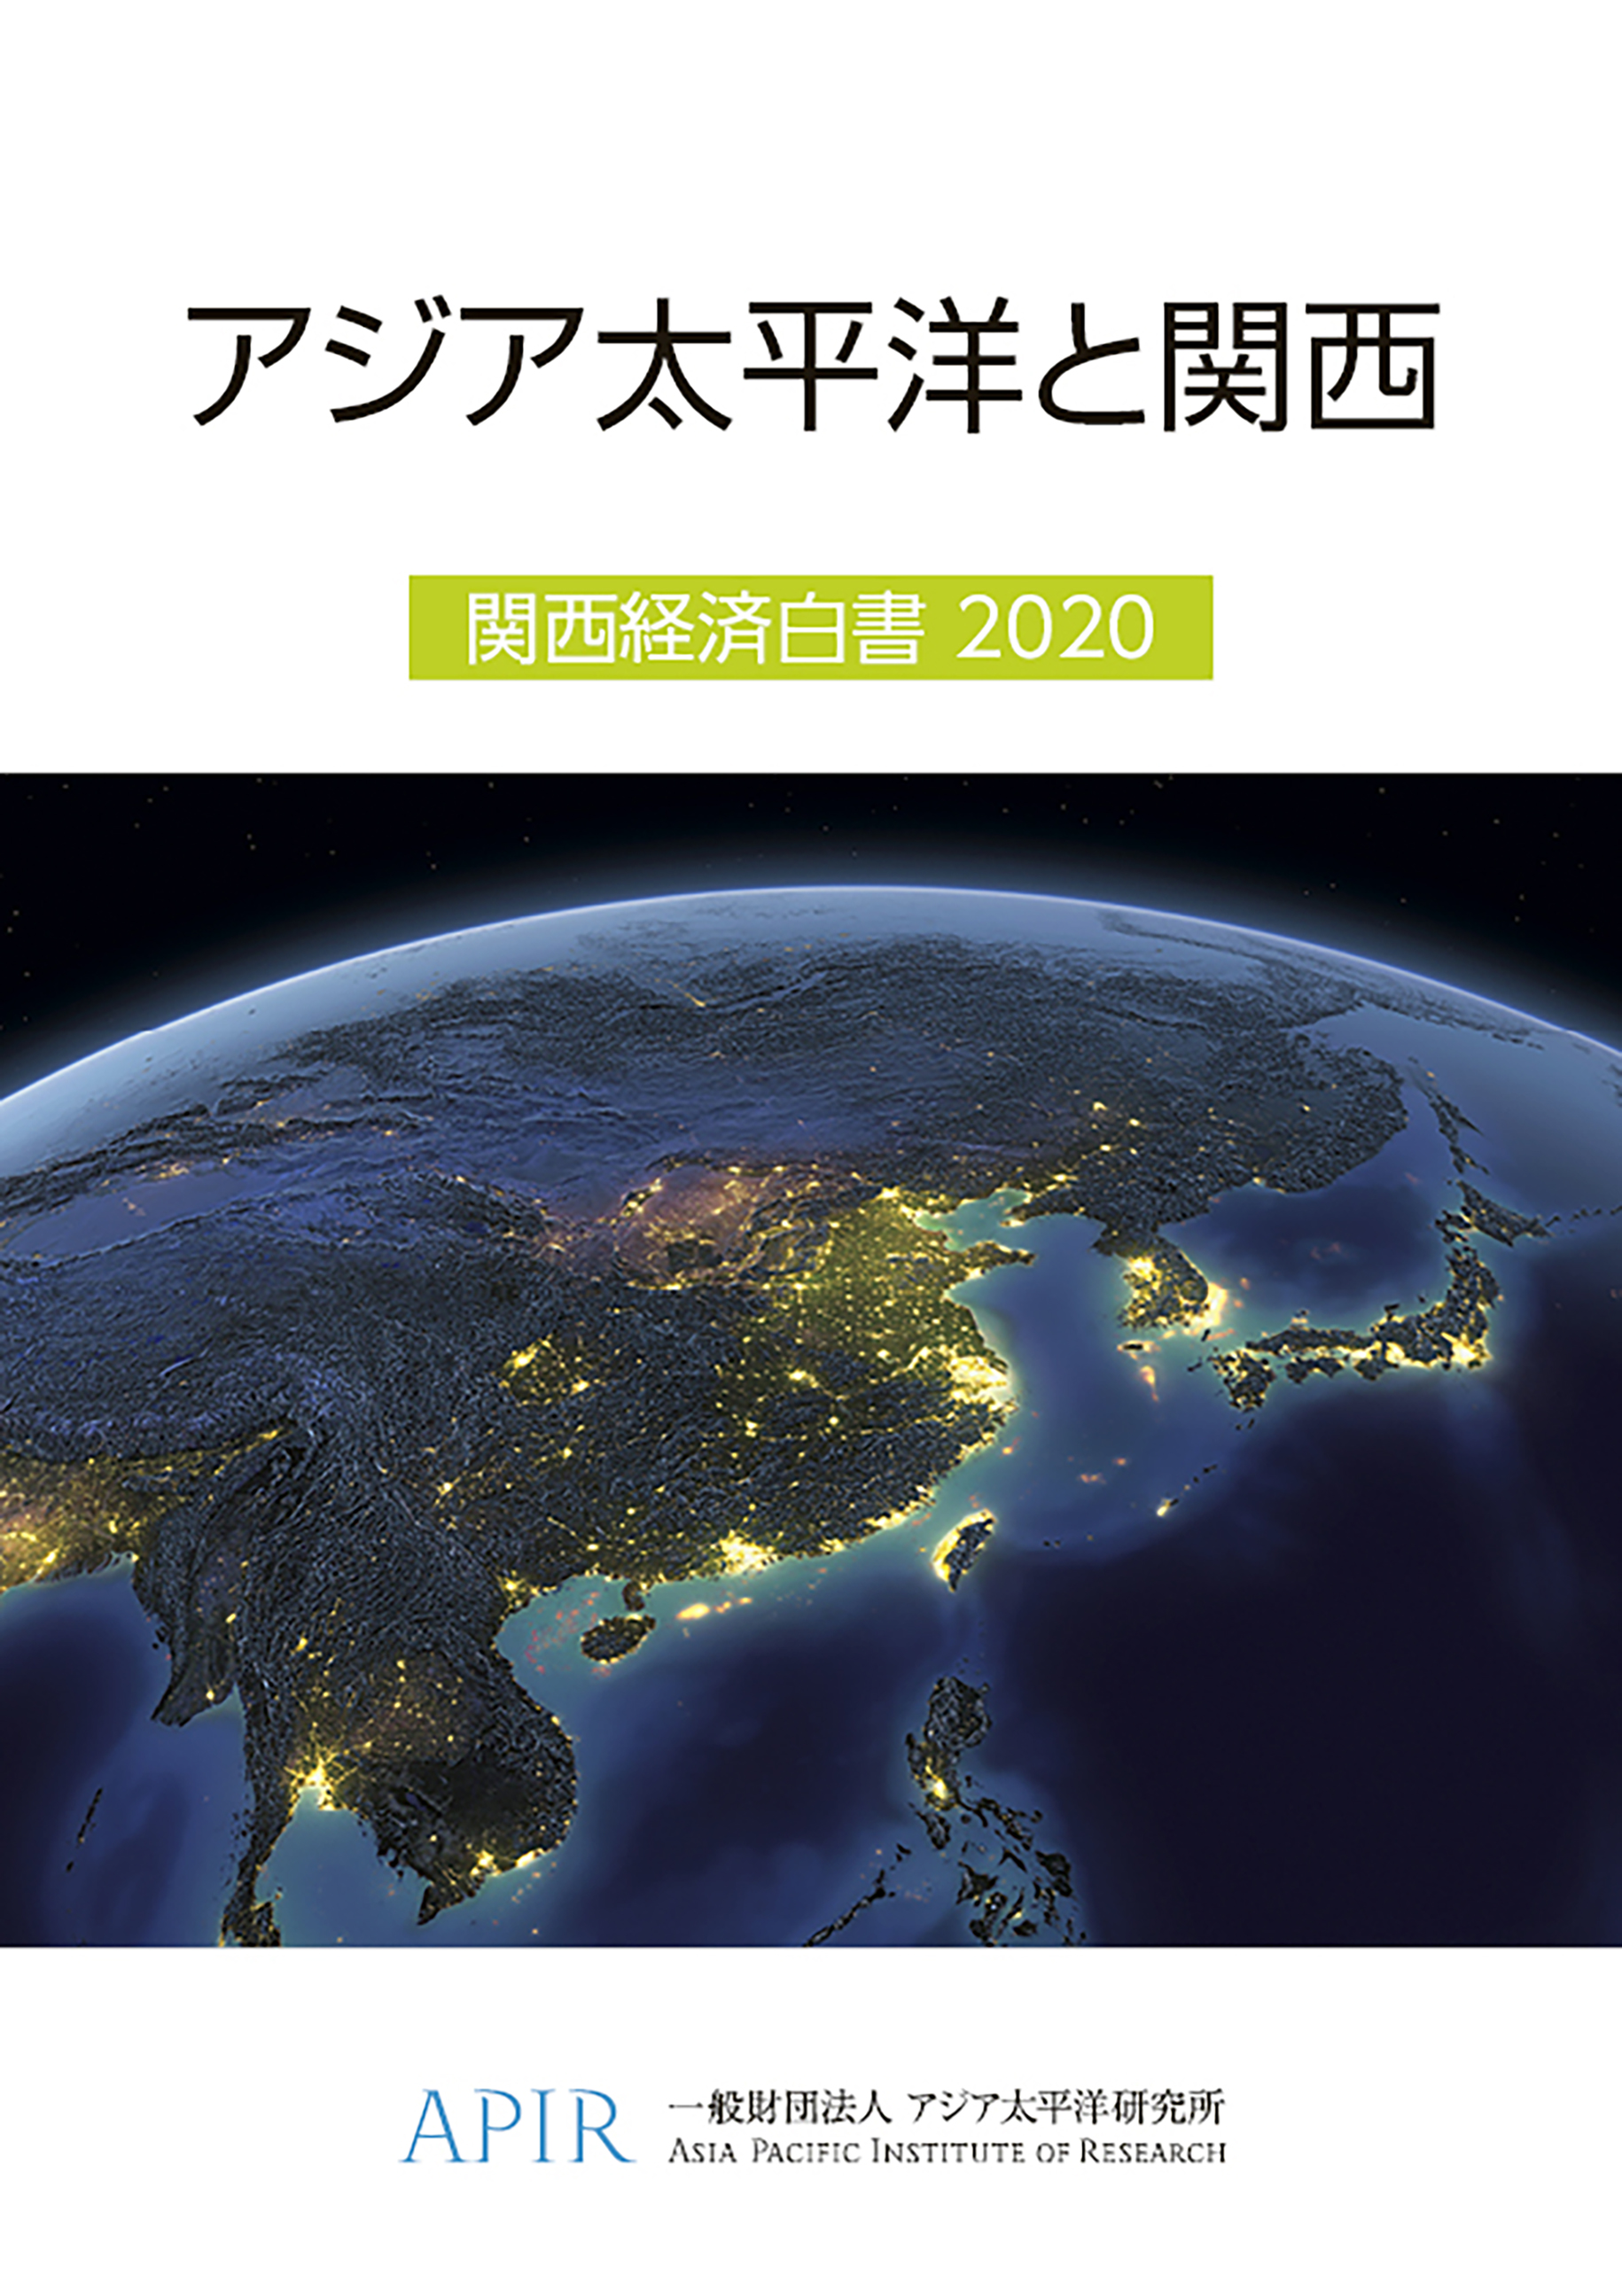 「アジア太平洋と関西　関西経済白書2020」を発行しました